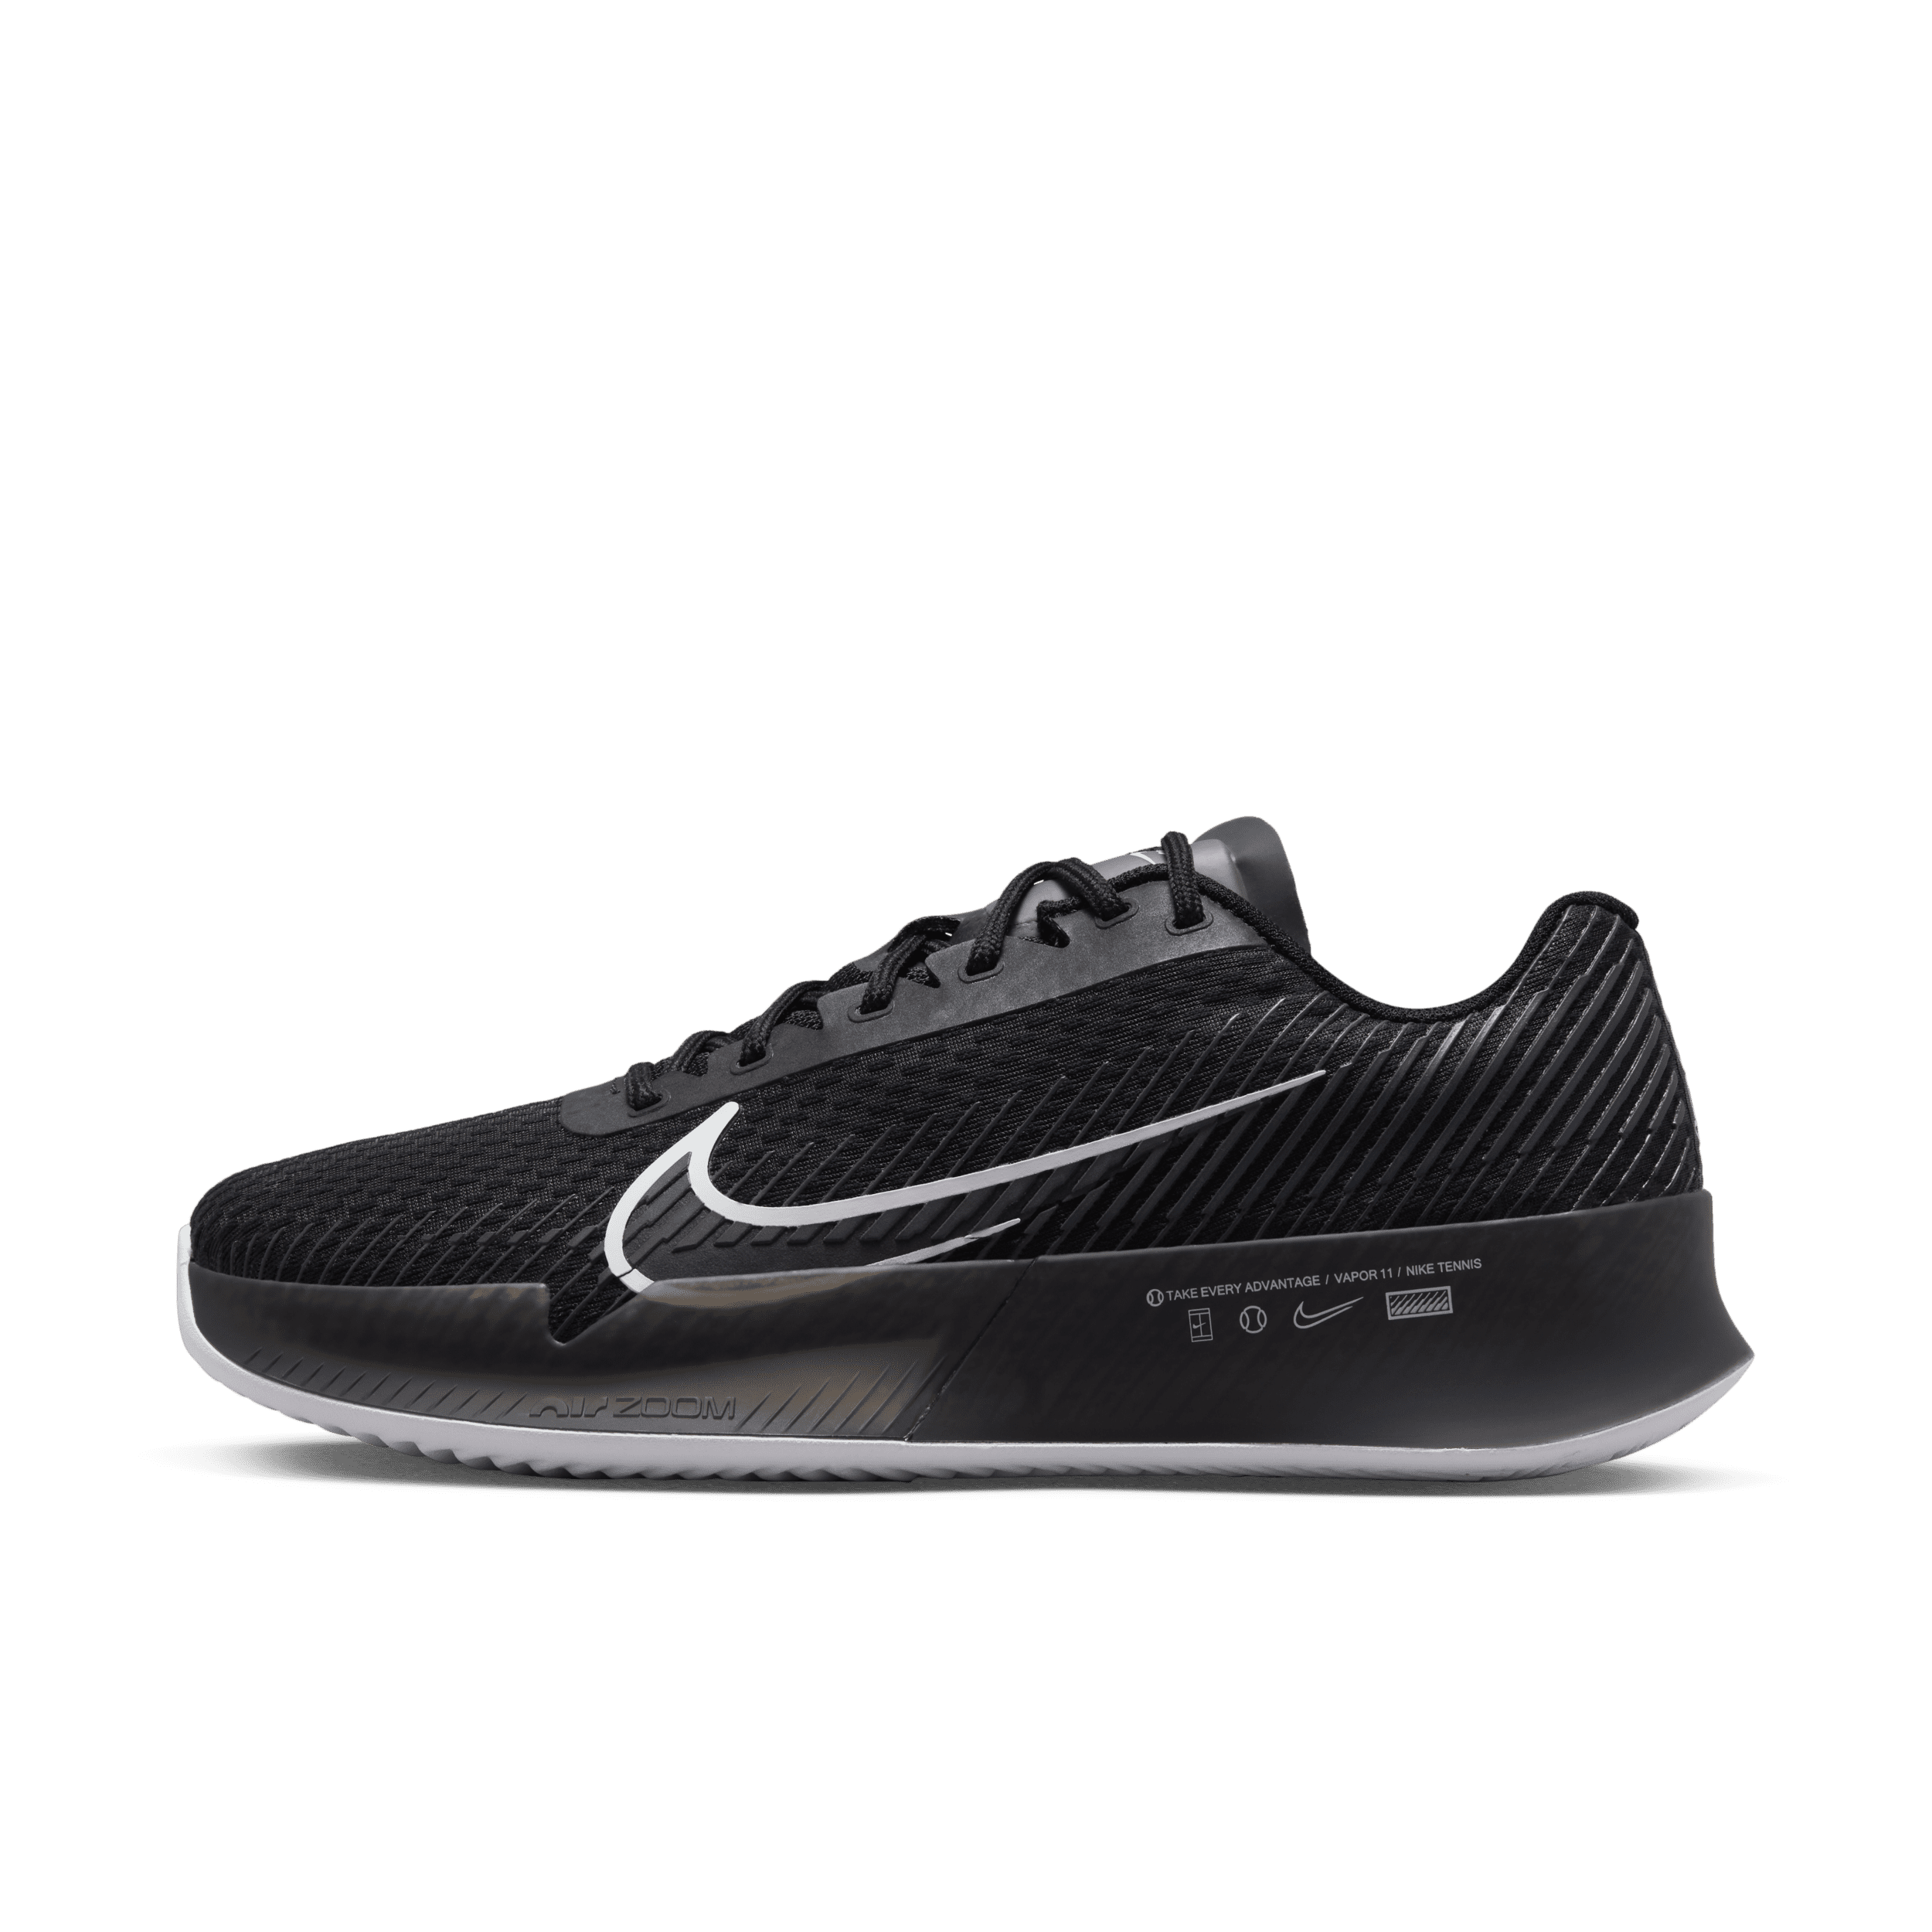 NikeCourt Air Zoom Vapor 11 Zapatillas de tenis para tierra batida - Mujer - Negro